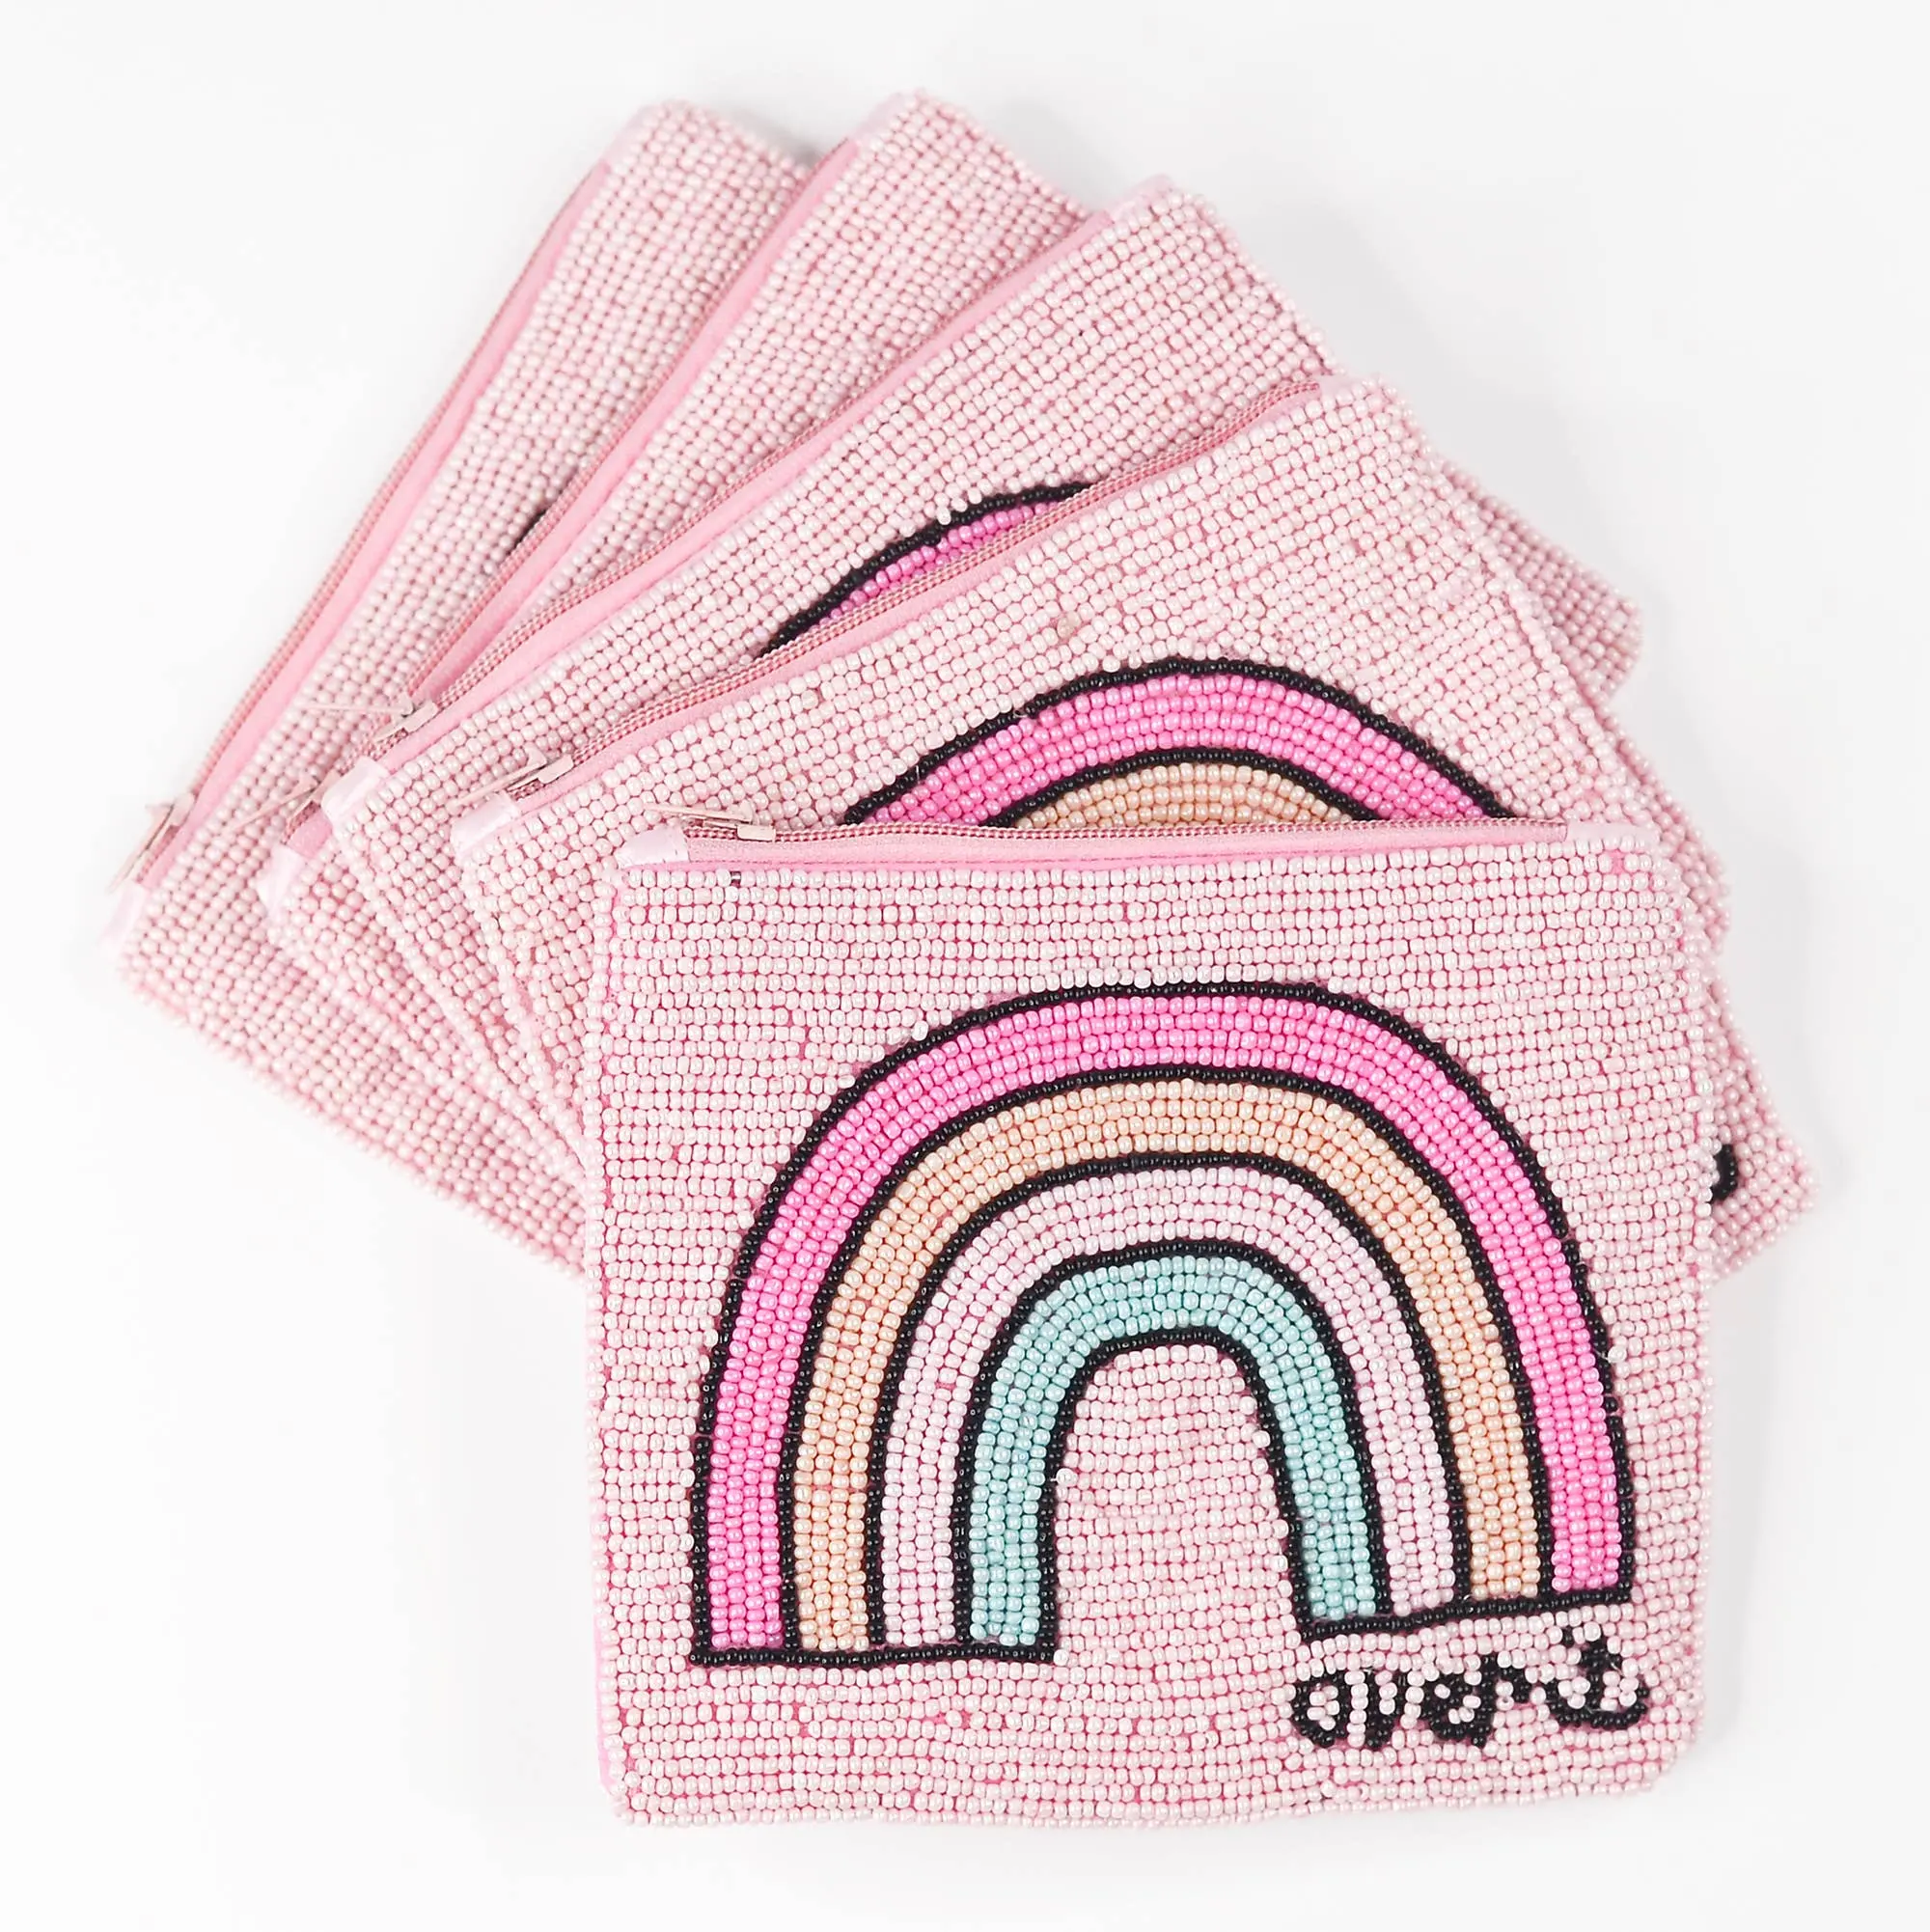 Kantong tangan Desain terbaru manik-manik Bordir manik biji dompet koin buatan tangan tas Fashion dengan warna disesuaikan untuk wanita dan gadis